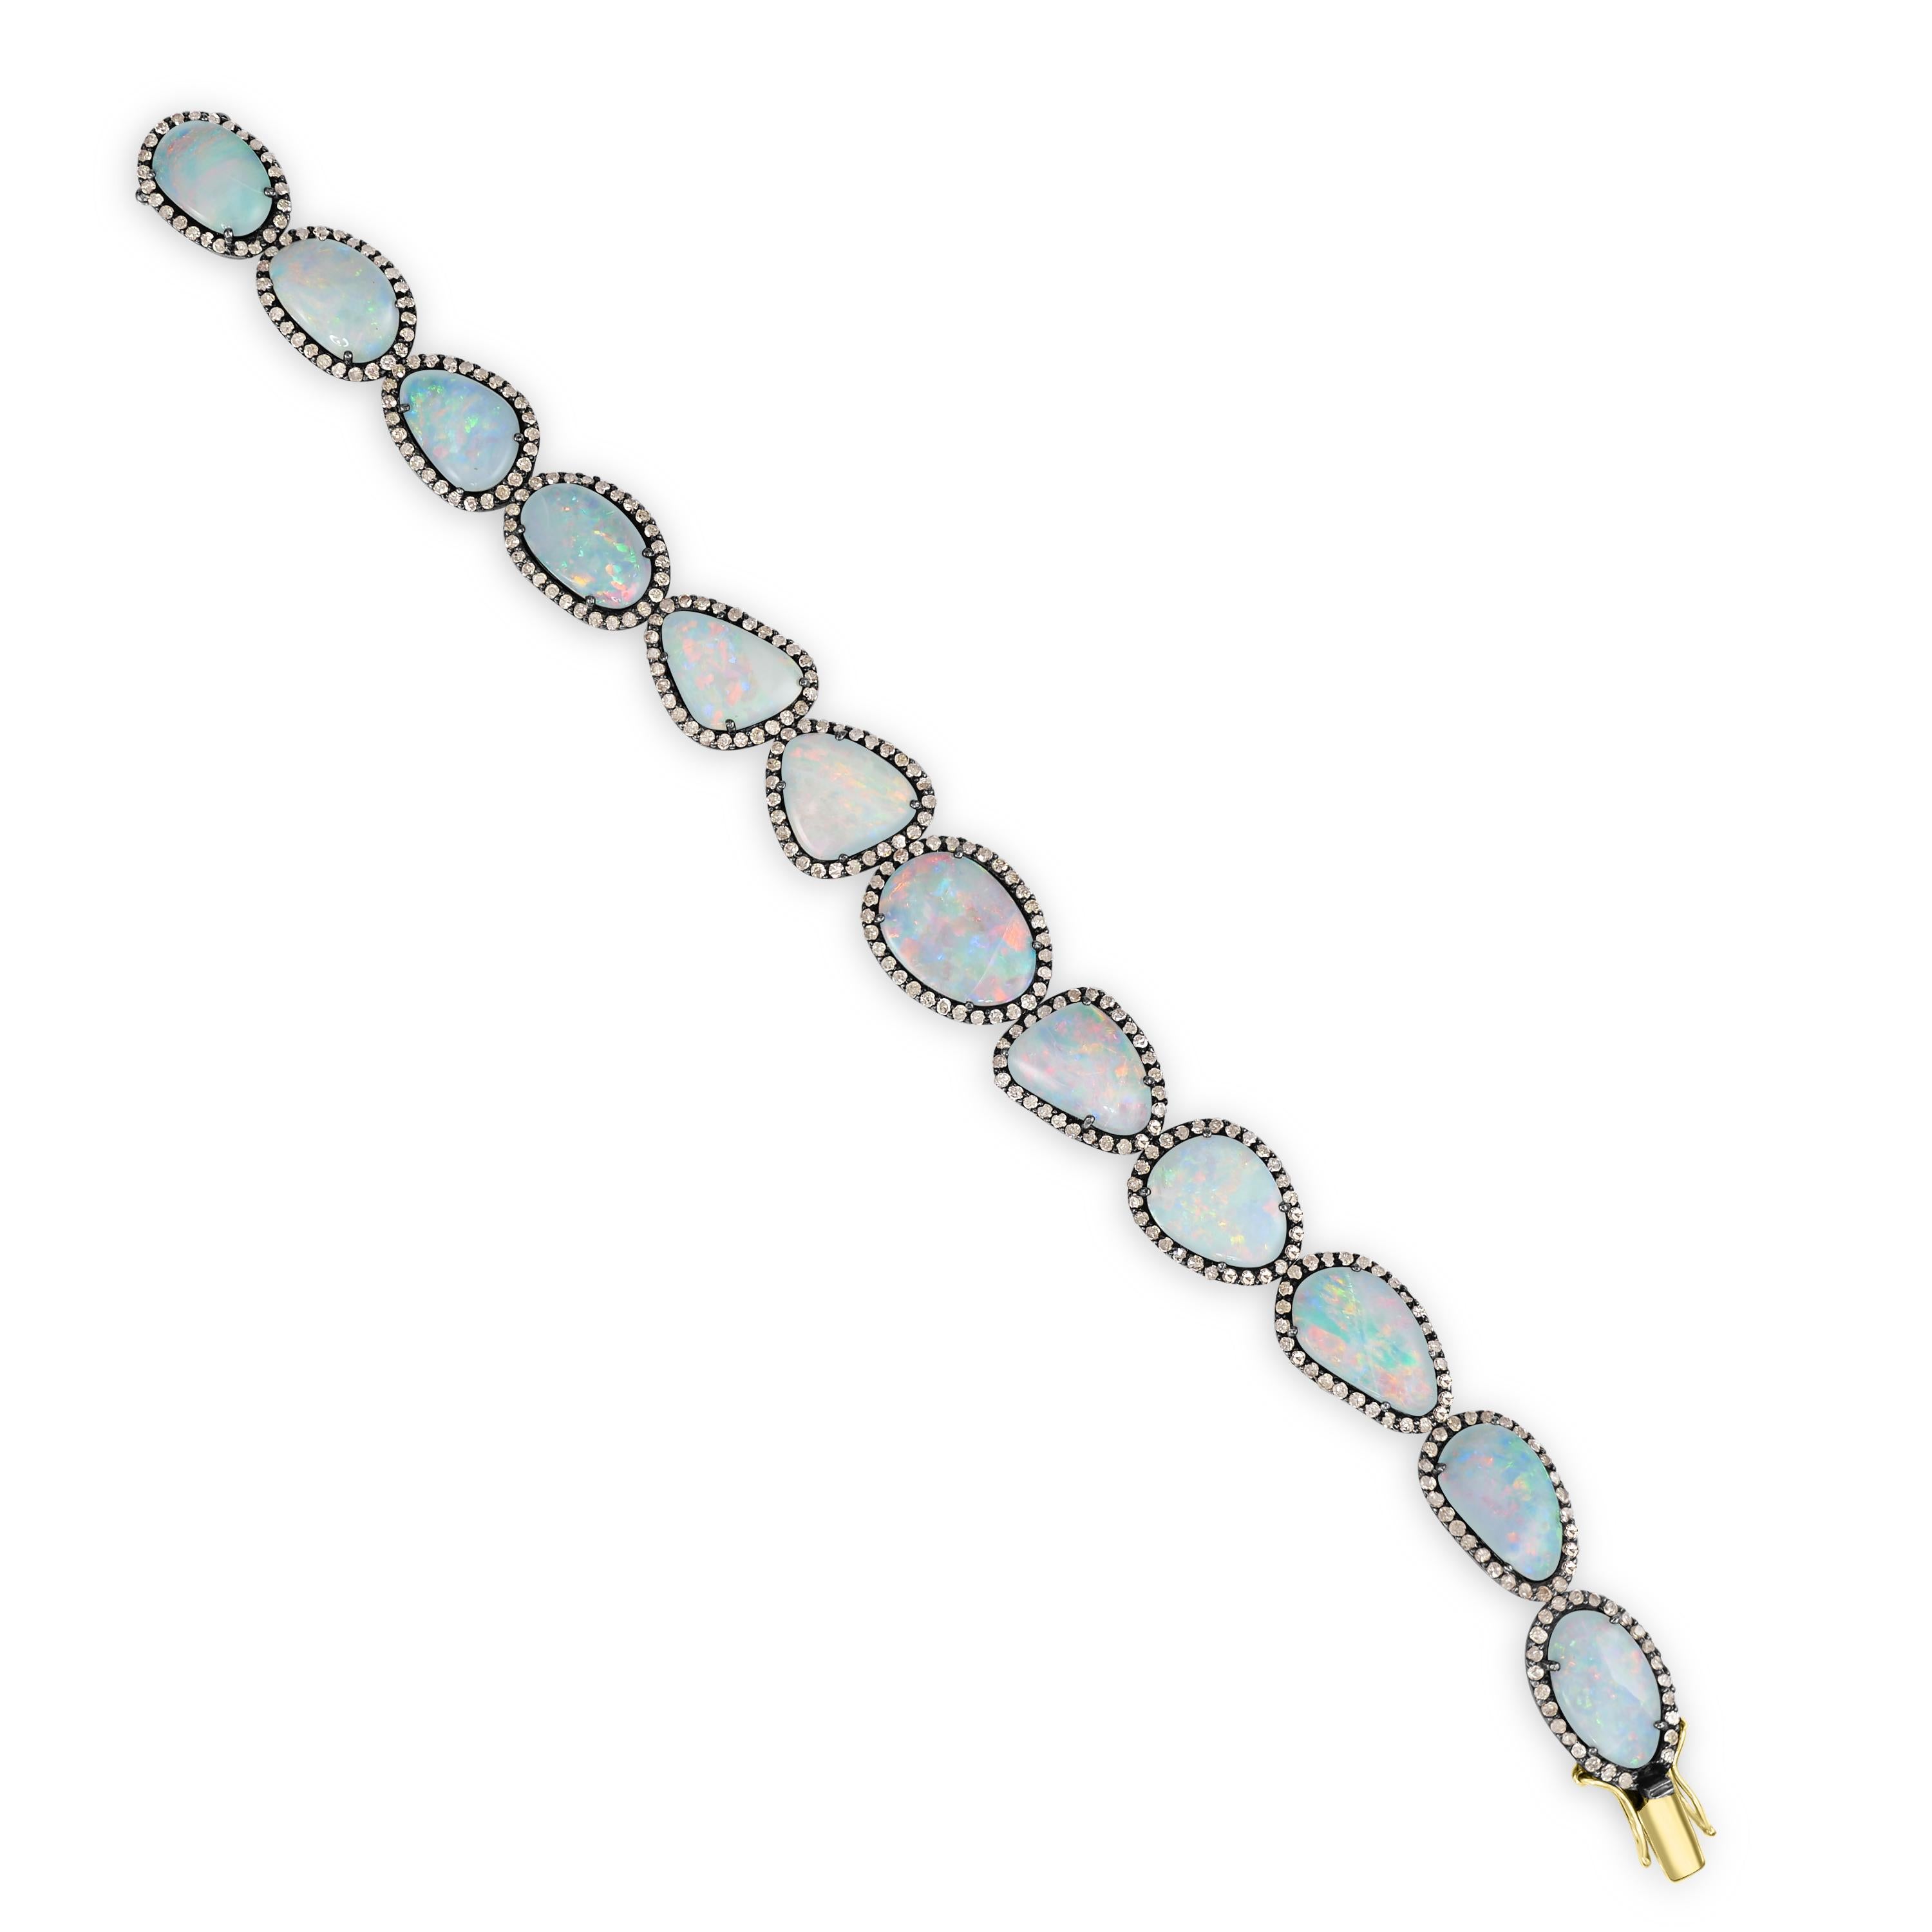 Laissez-vous séduire par l'allure enchanteresse de notre bracelet à maillons victorien en doublet d'opales bleues et de diamants, un chef-d'œuvre de sophistication et d'élégance.

Ce bracelet exquis présente un ensemble étonnant de pierres ovales